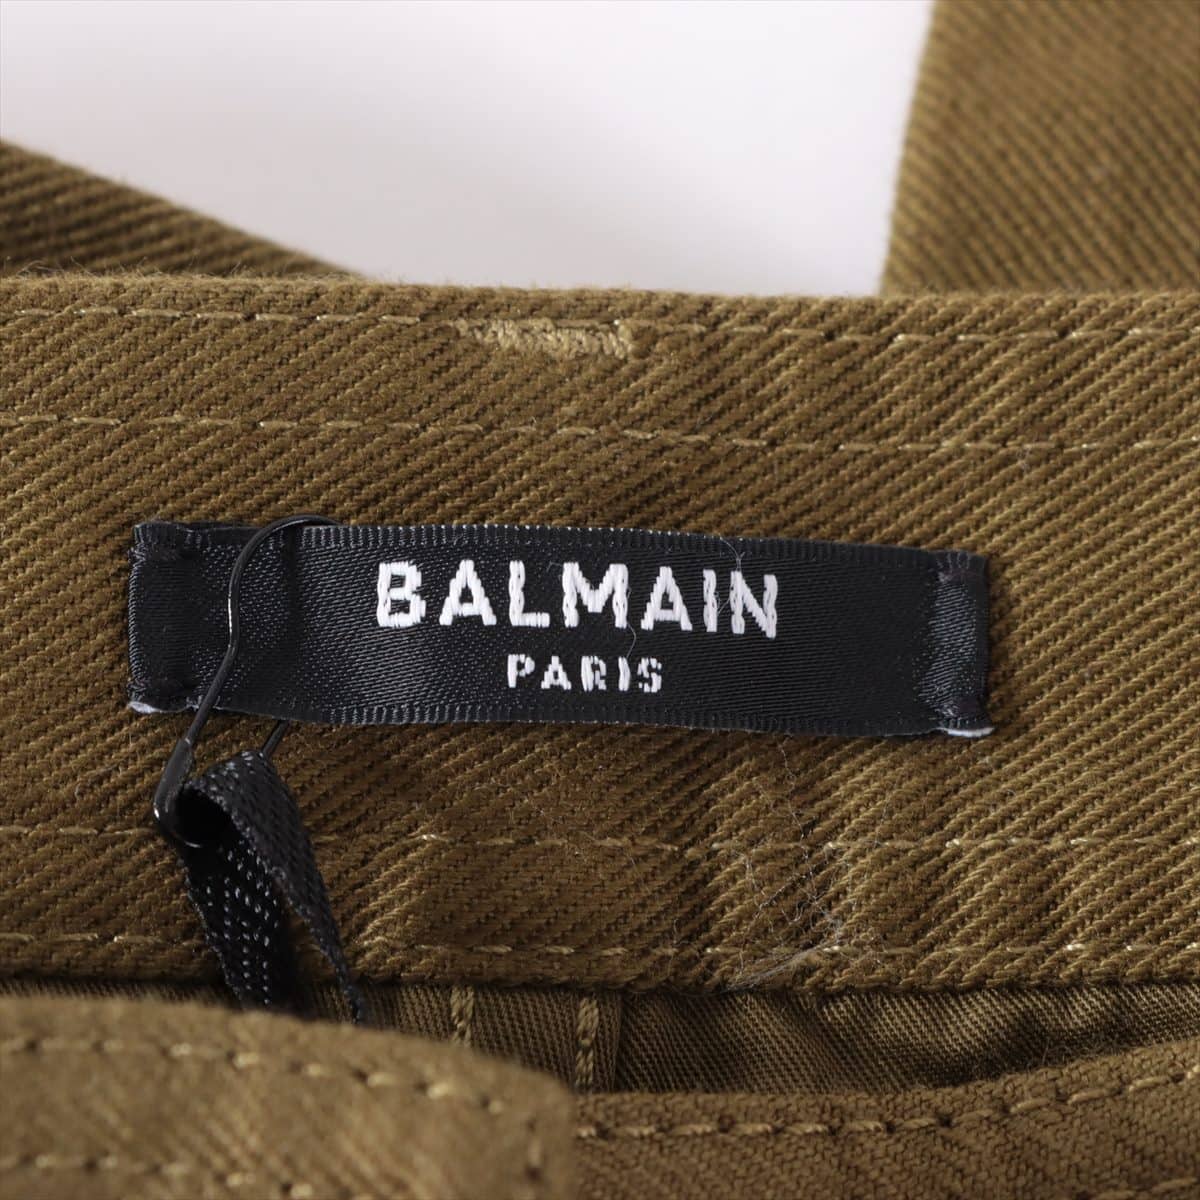 Balmain 20AW Cotton & polyurethane Cargo pants 34 Ladies' Khaki  UF05702